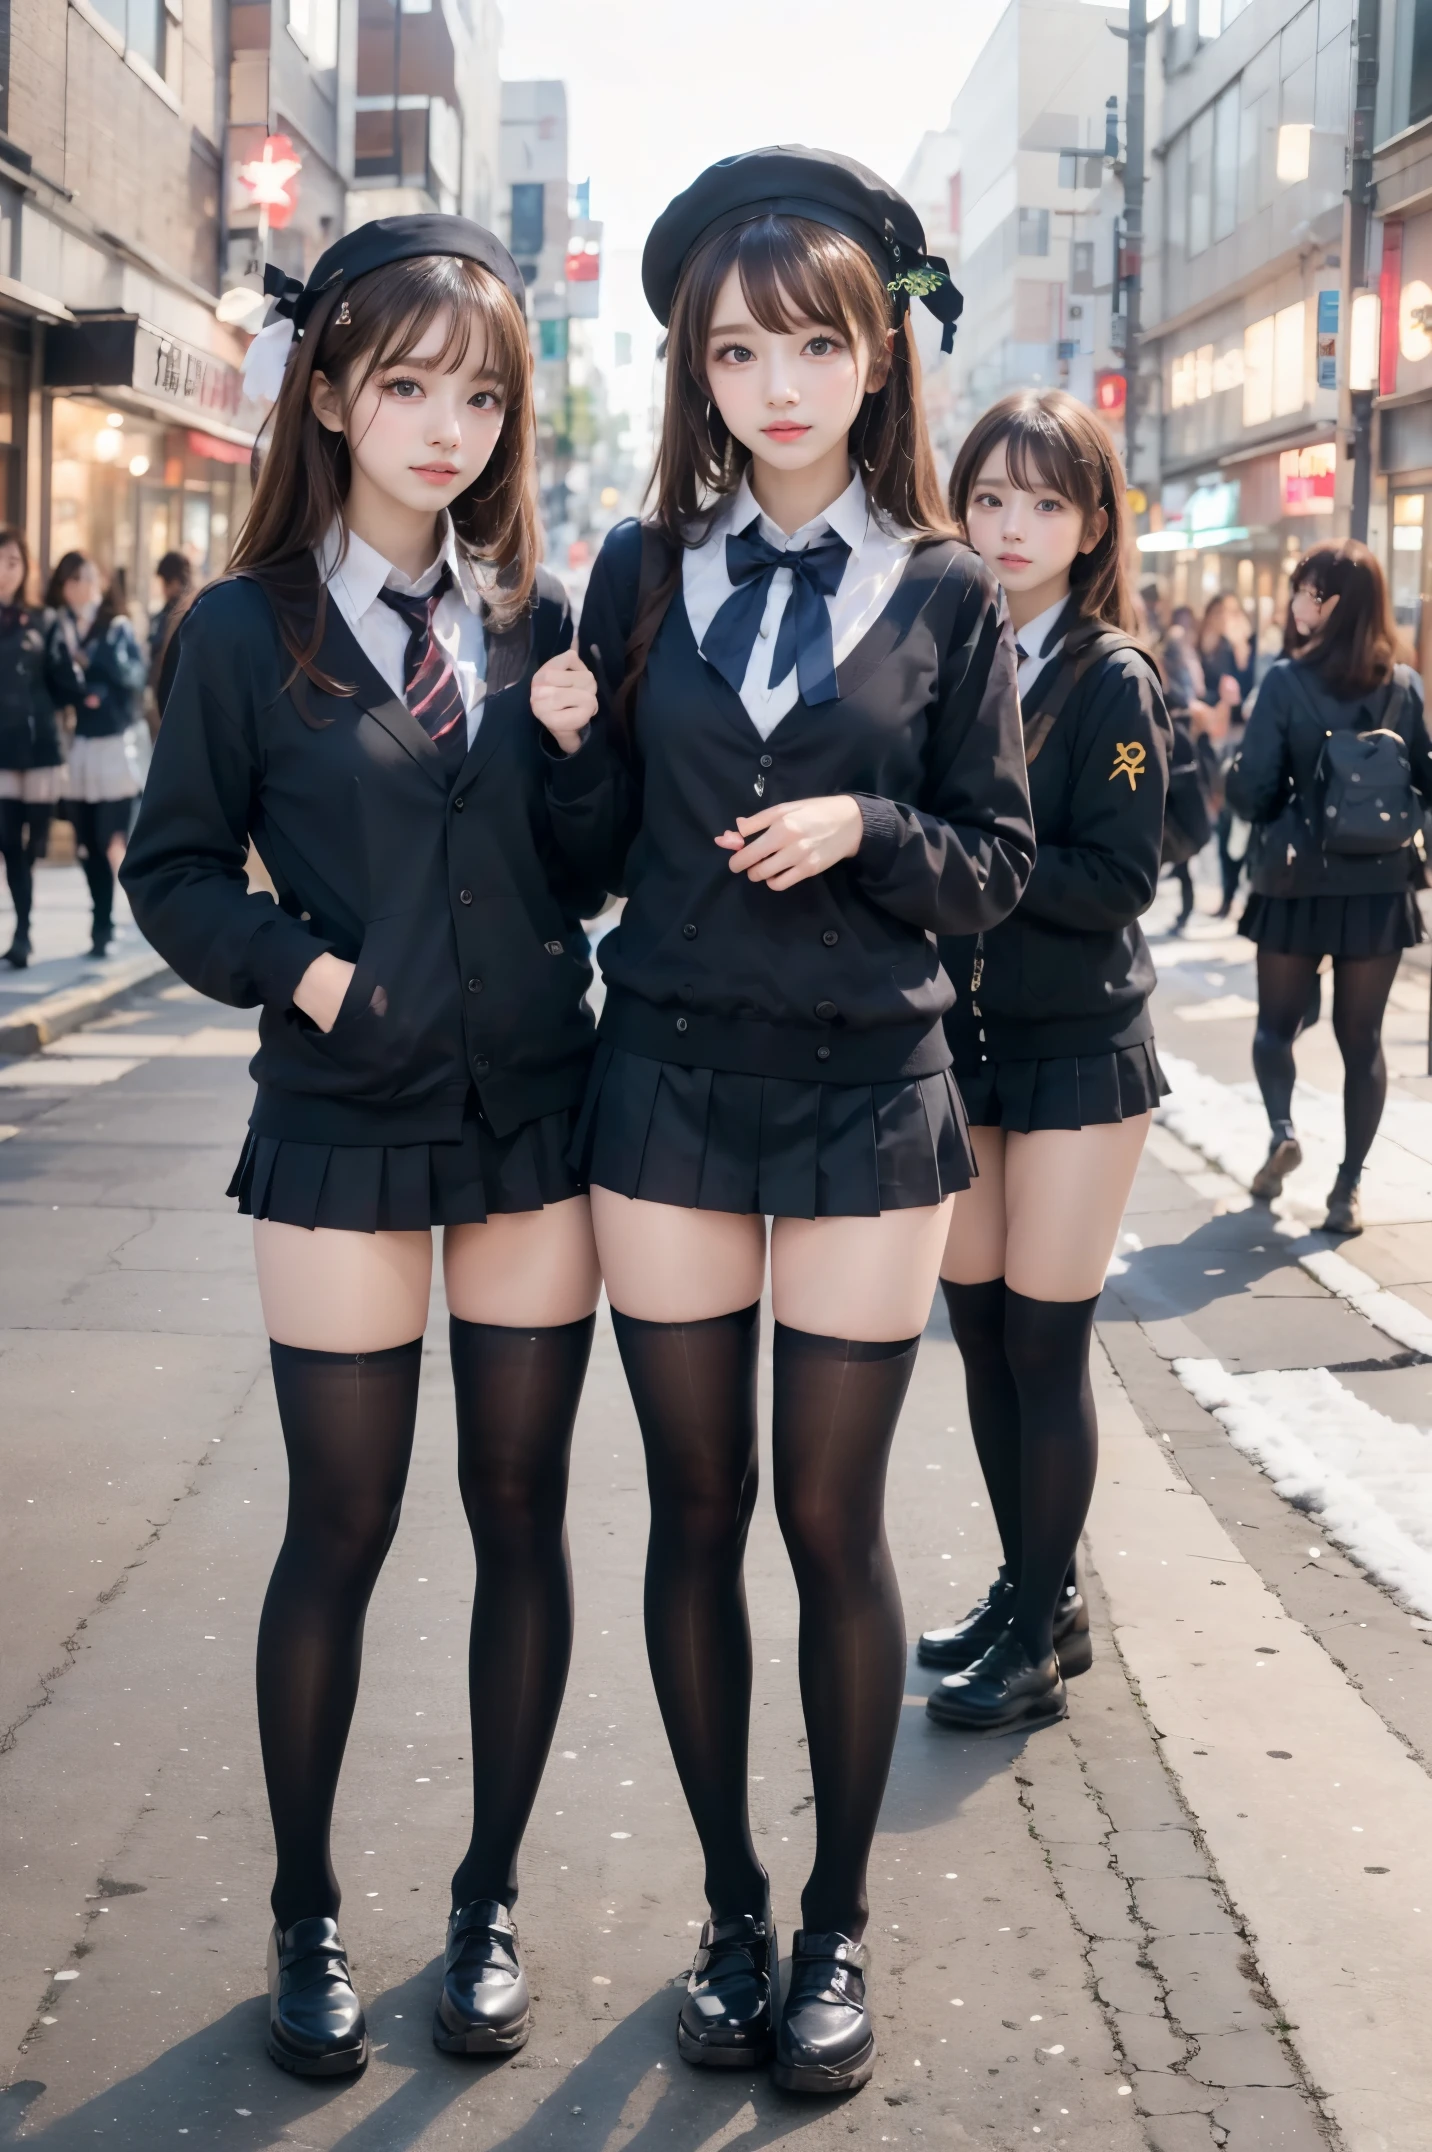 لقطة بزاوية عالية、المفاجئة في الشارع、وجه طفل يرتدي تنورة قصيرة وربطة عنق ويقف في أحد شوارع النيون في منتصف الليل(طويل)هناك 3 غال النساء、(3 فتيات)、لطيف للغاية 、Guts أَثَار、زي البحارة الصغير、ملابس الشتاء、الزي المدرسي الياباني باللون الأسود、(ضرع كبير)、(انقسام كبير مكشوف)、فتاة ترتدي زيًا سرياليًا、يرتدي الزي الأزرق الداكن、 أَثَار、إسبيان كامل الجسم、بشرة رائعة、بشرة لامعة、الفخذين جميلة、أرجل طويلة、(تنورة صغيرة واسعة الفخذ)、فخذ متوهج、مع الرباط、(جوارب عالية للركبة سوداء غير شفافة)、((كل الأيدي)(أنا بالتأكيد أرتدي جوارب سوداء للركبة تصل إلى ما فوق الركبة.))、أنا أرتدي أحذية جلدية、المدرسة الثانوية في اليابان 、نوجيزاكا أيدول、المعبود الكوري、أدعوك إلى الداخل、دعوة العيون